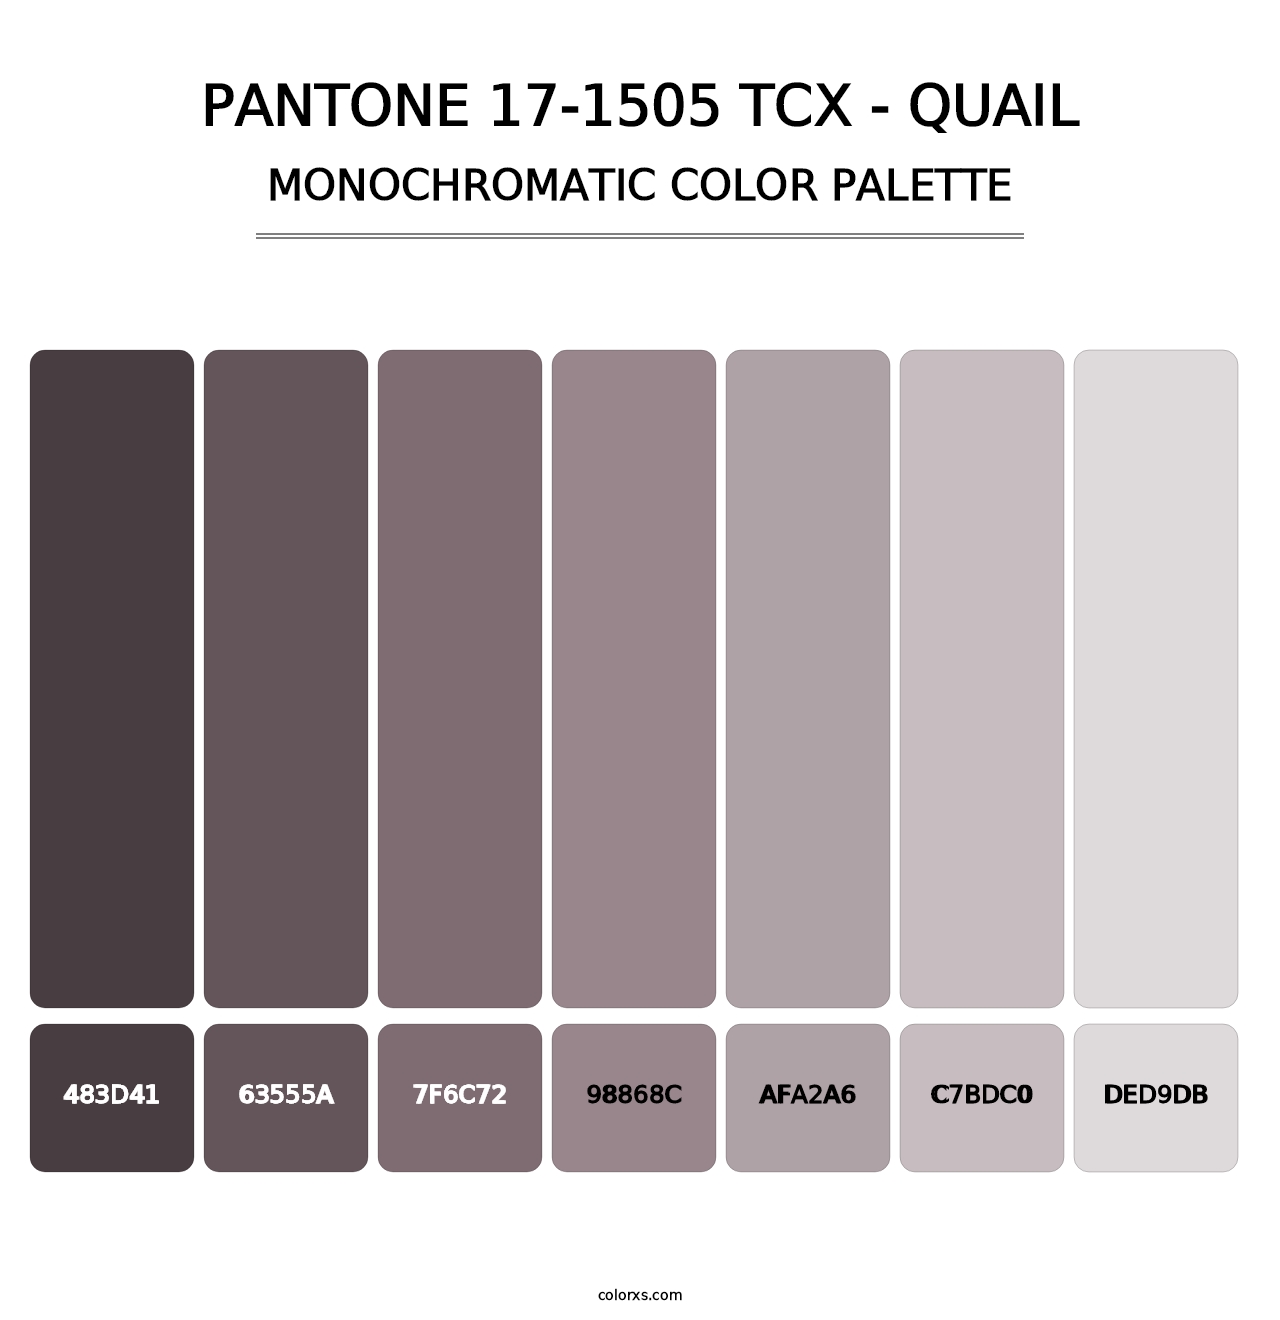 PANTONE 17-1505 TCX - Quail - Monochromatic Color Palette